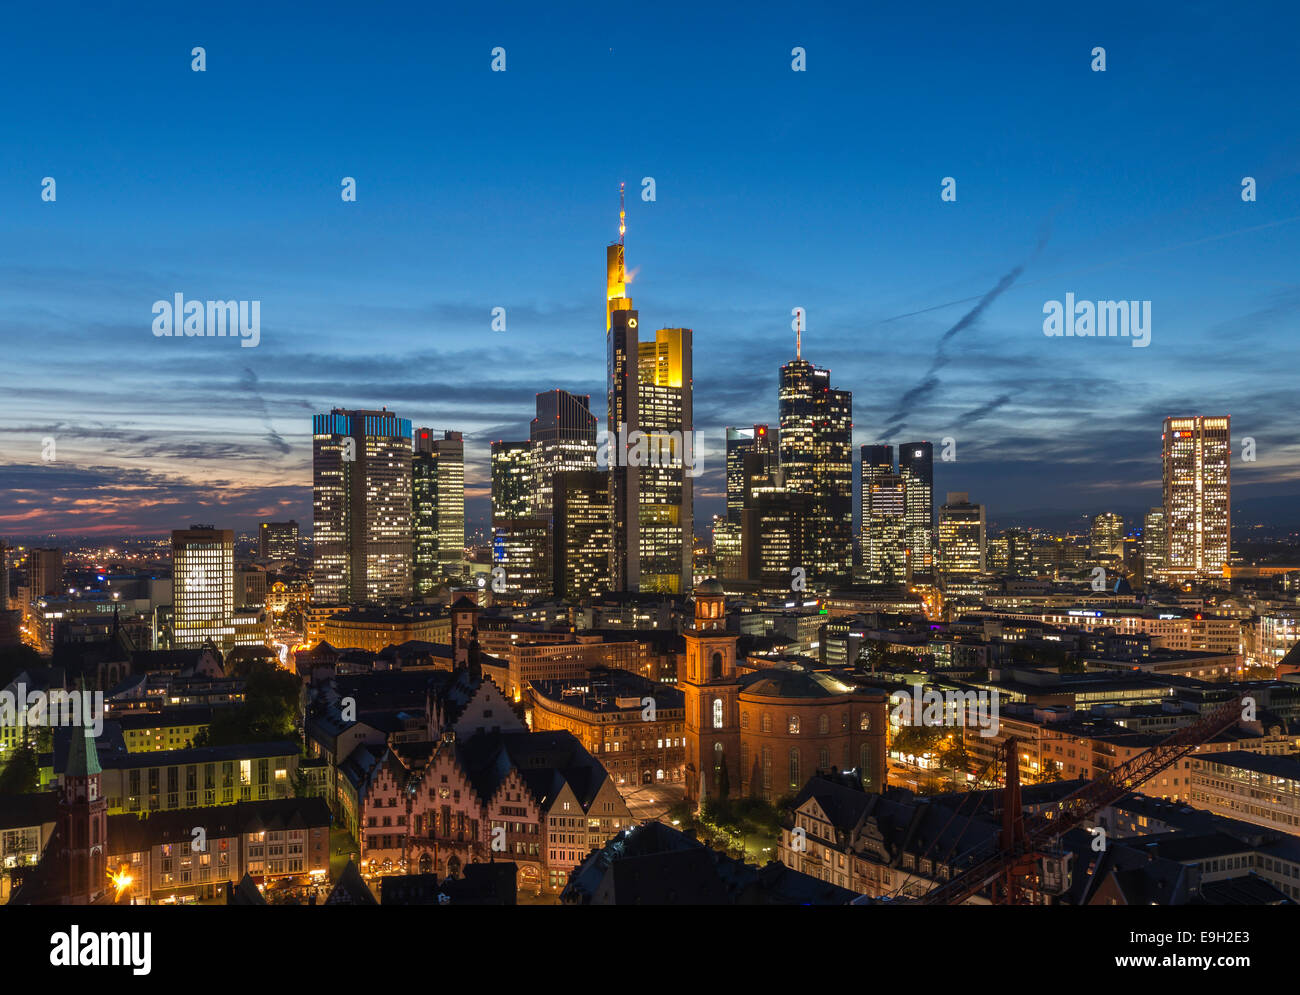 Vue sur les toits de la ville au crépuscule et allumé des gratte-ciel, centre-ville, Frankfurt am Main, Hesse, Allemagne Banque D'Images